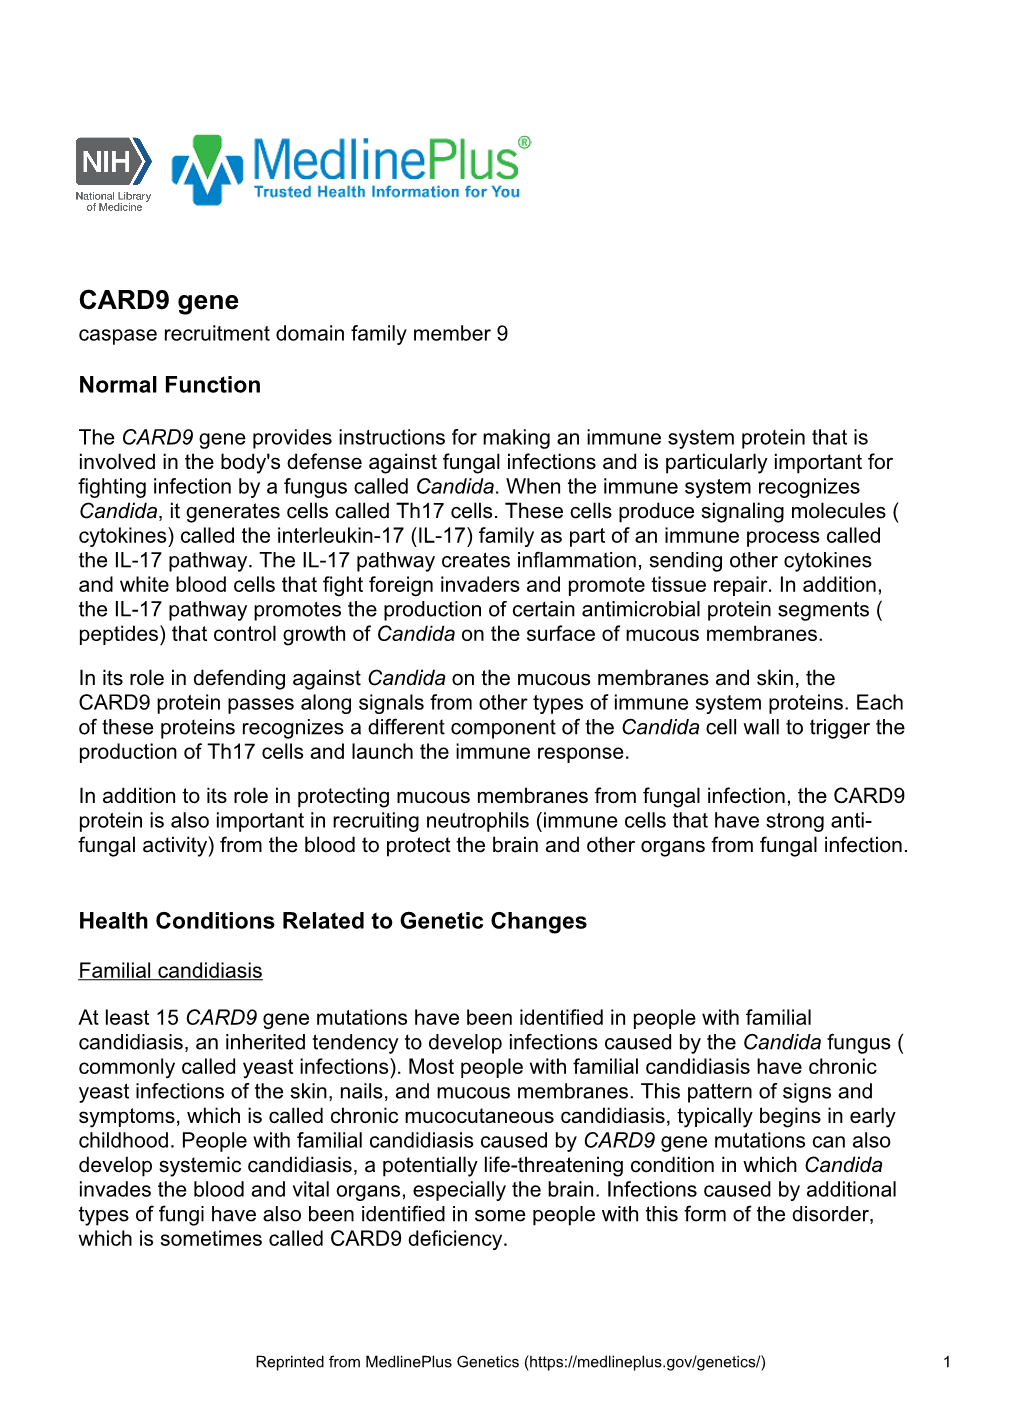 CARD9 Gene Caspase Recruitment Domain Family Member 9